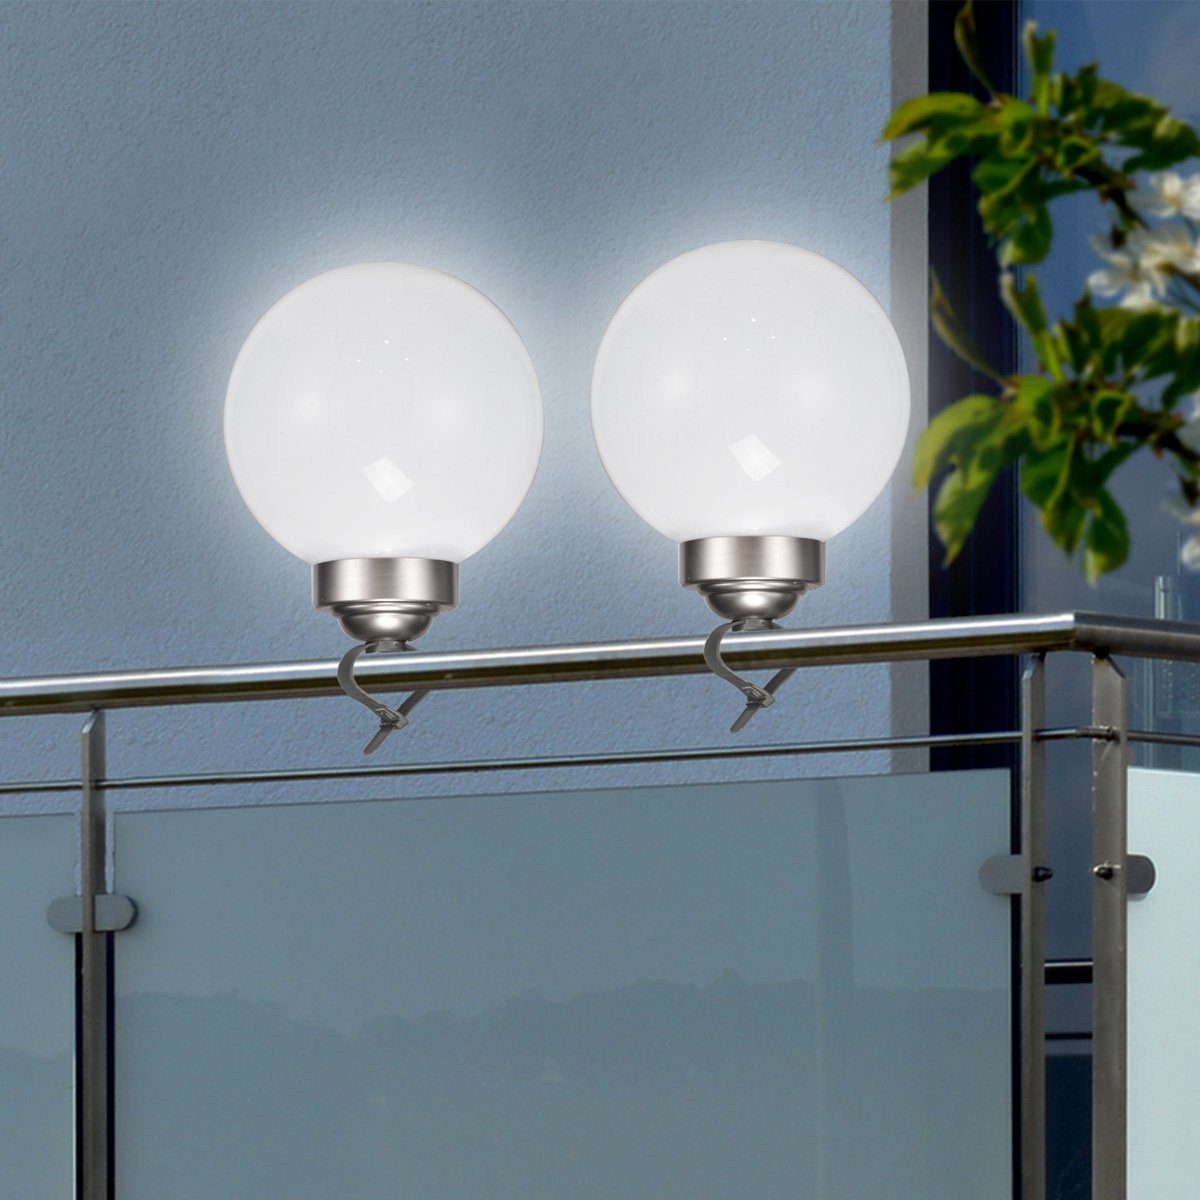 Erdspieß LED D: 2in1 Classic, bis Gelände, 6000K) (5300K 20cm Balkon LED Solar Kugellampe LED MARELIDA Solarleuchte inkl. Clip kaltweiss